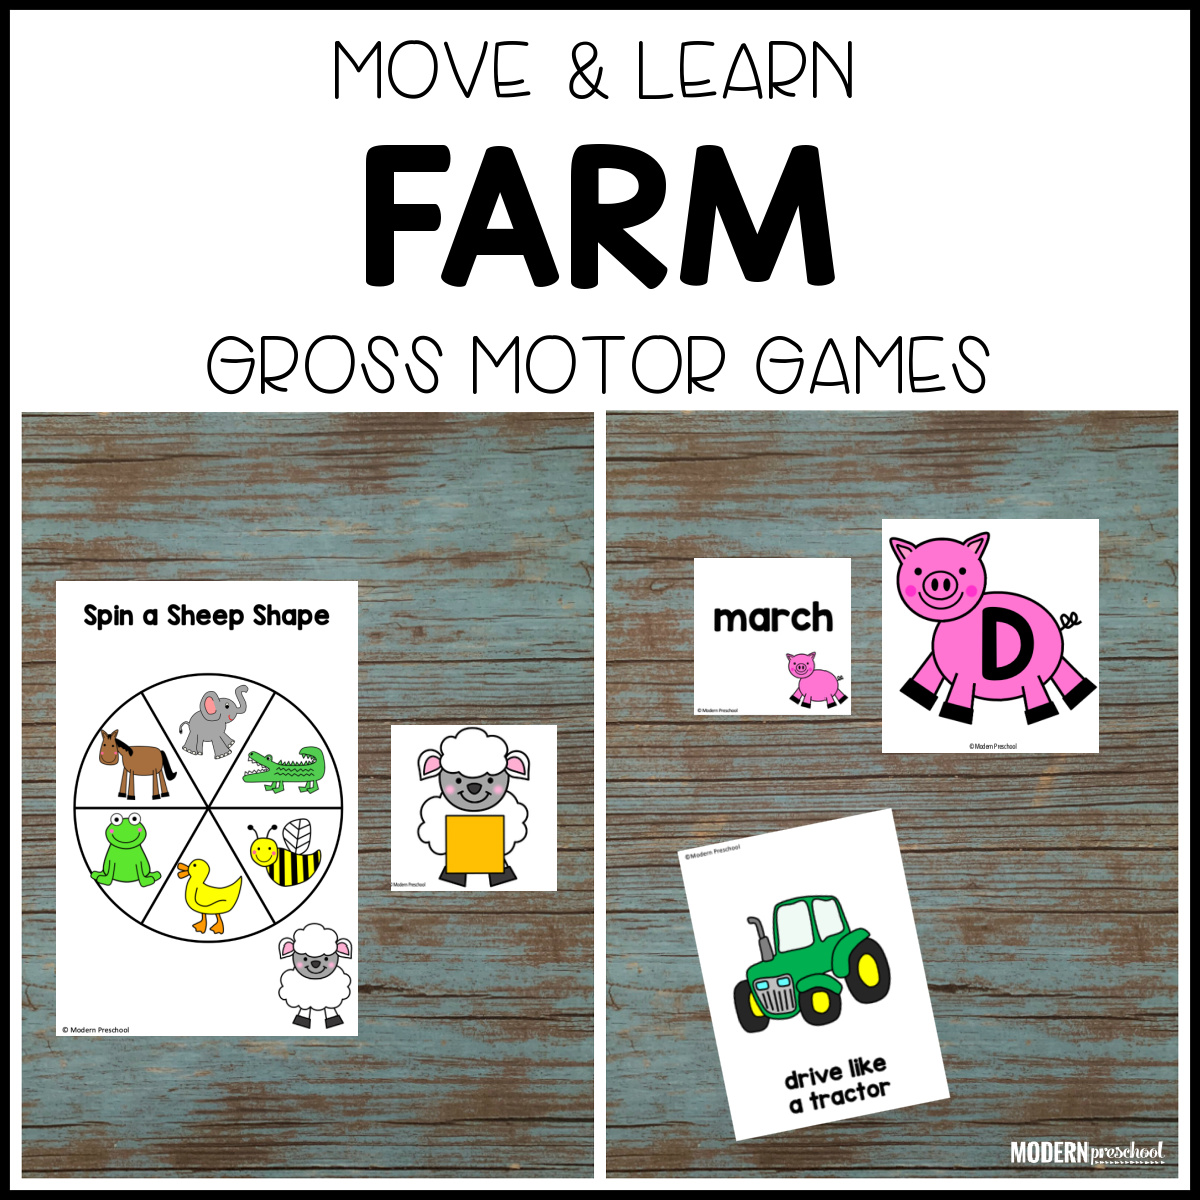 Farm Move & Learn Gross Motor Games - Modern Preschool